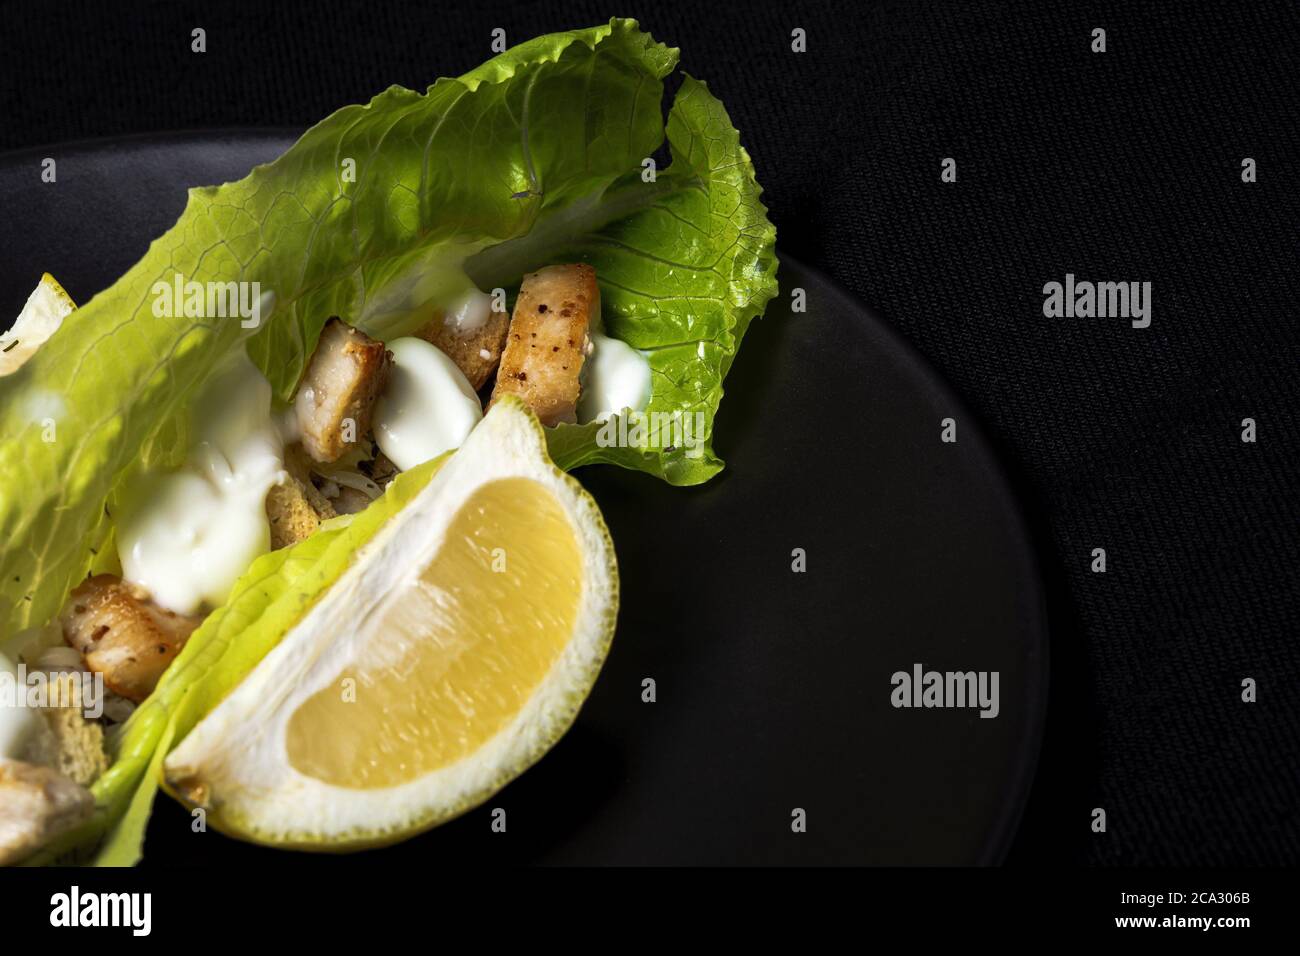 Salade César maison avec poulet, laitue, citron, toasts, sauce césar, fromage et ail. Sur fond sombre. Concept d'alimentation saine. Banque D'Images